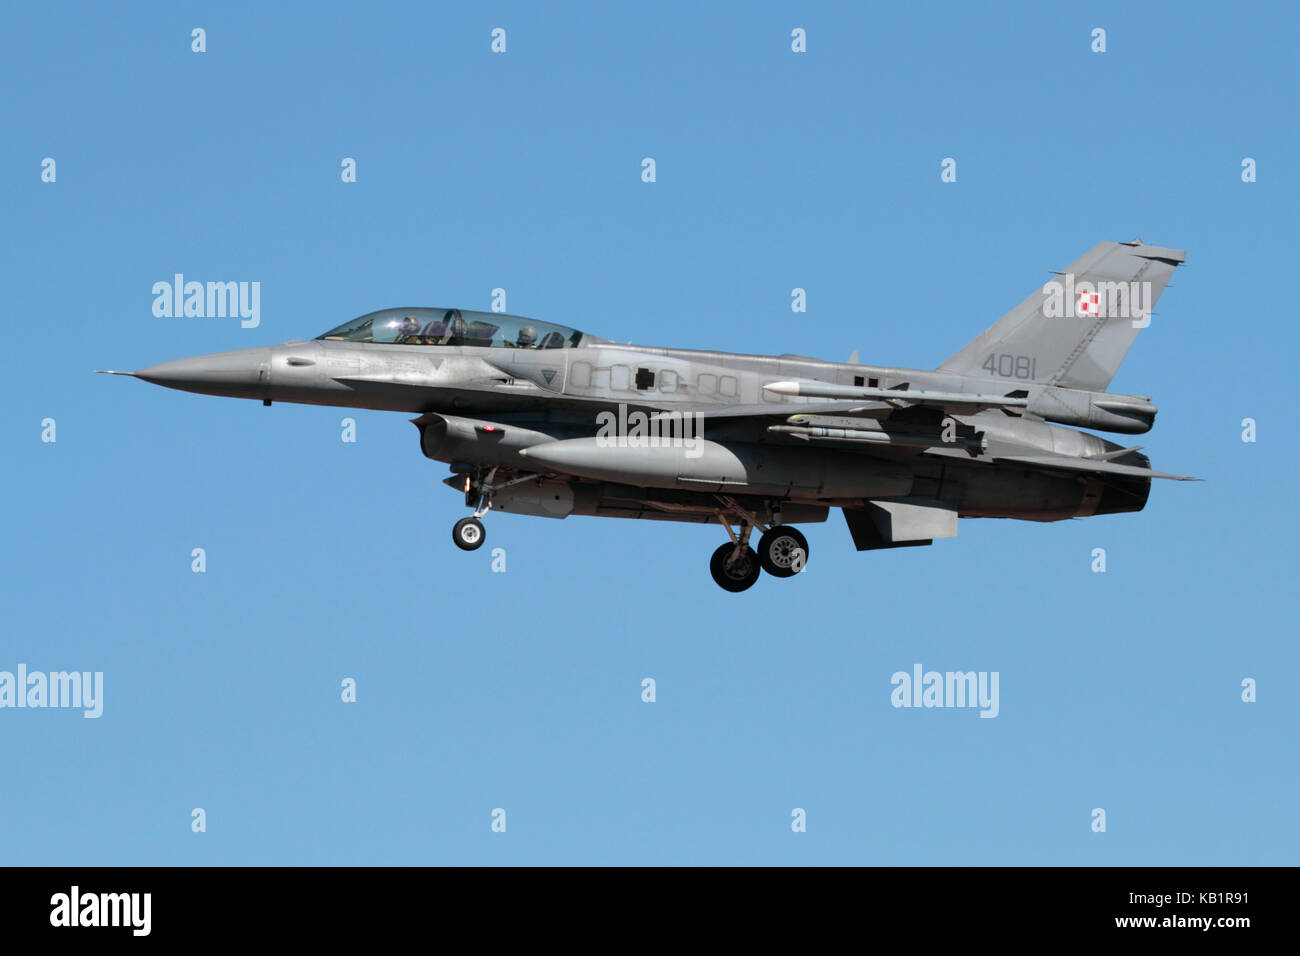 Militärische Luftfahrt. Die polnische Luftwaffe F-16D Jet Fighter Aircraft on Ansatz Stockfoto